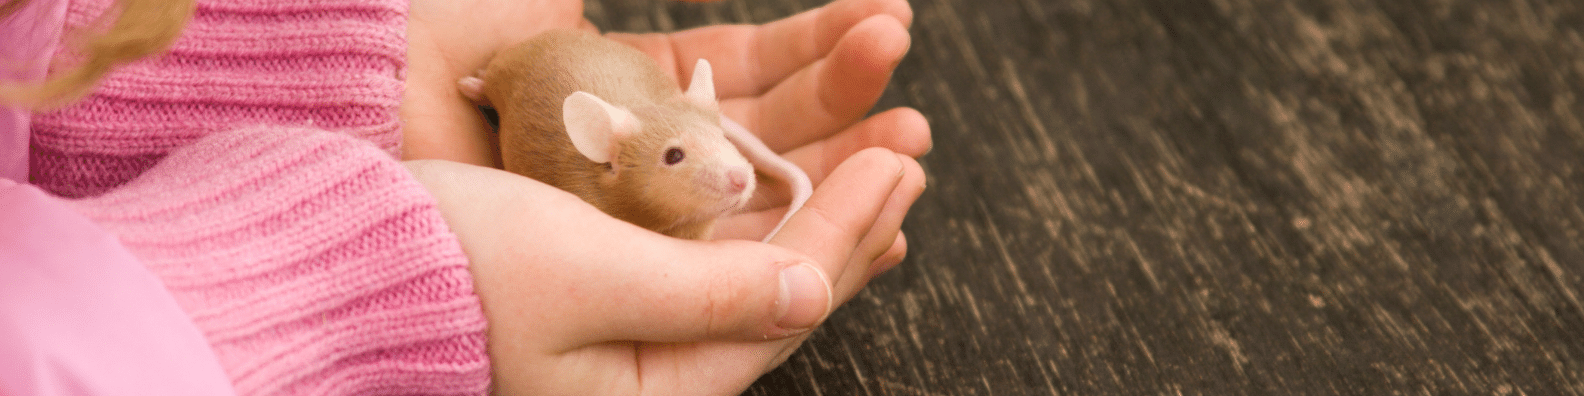 возраст мыши по человеческим меркам